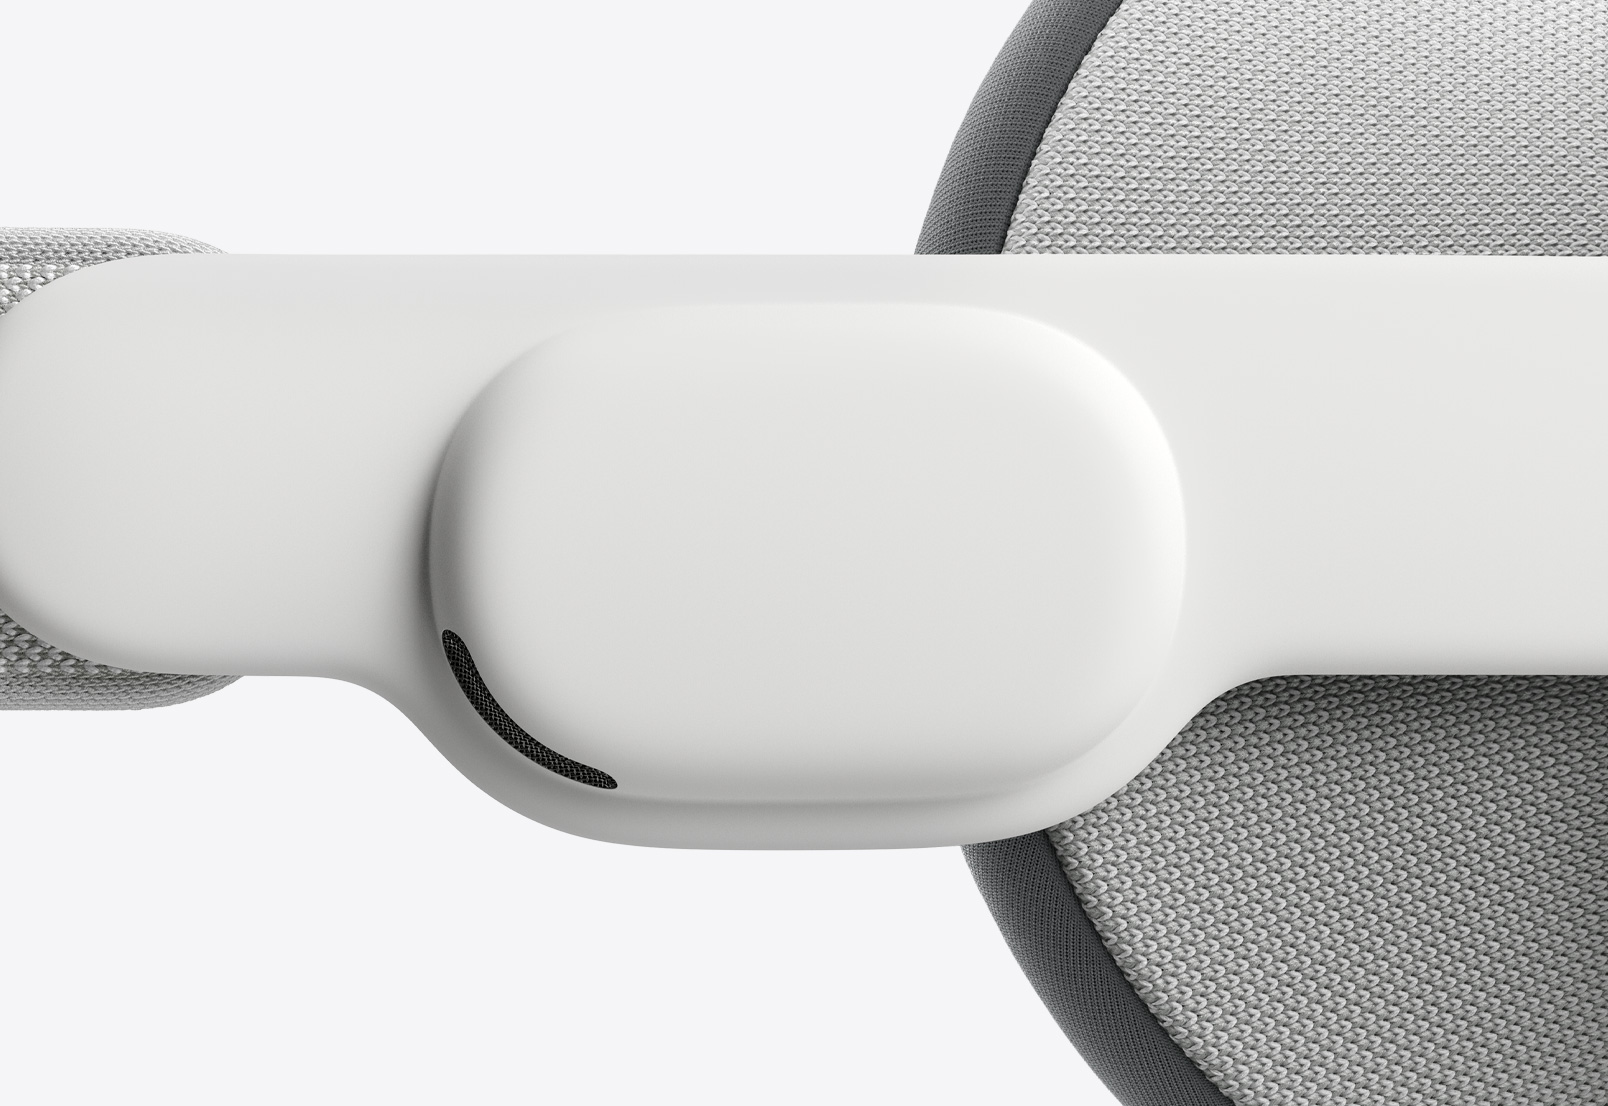 Gros plan sur la face latérale de l’Apple Vision Pro montrant la bande audio de l’oreille droite